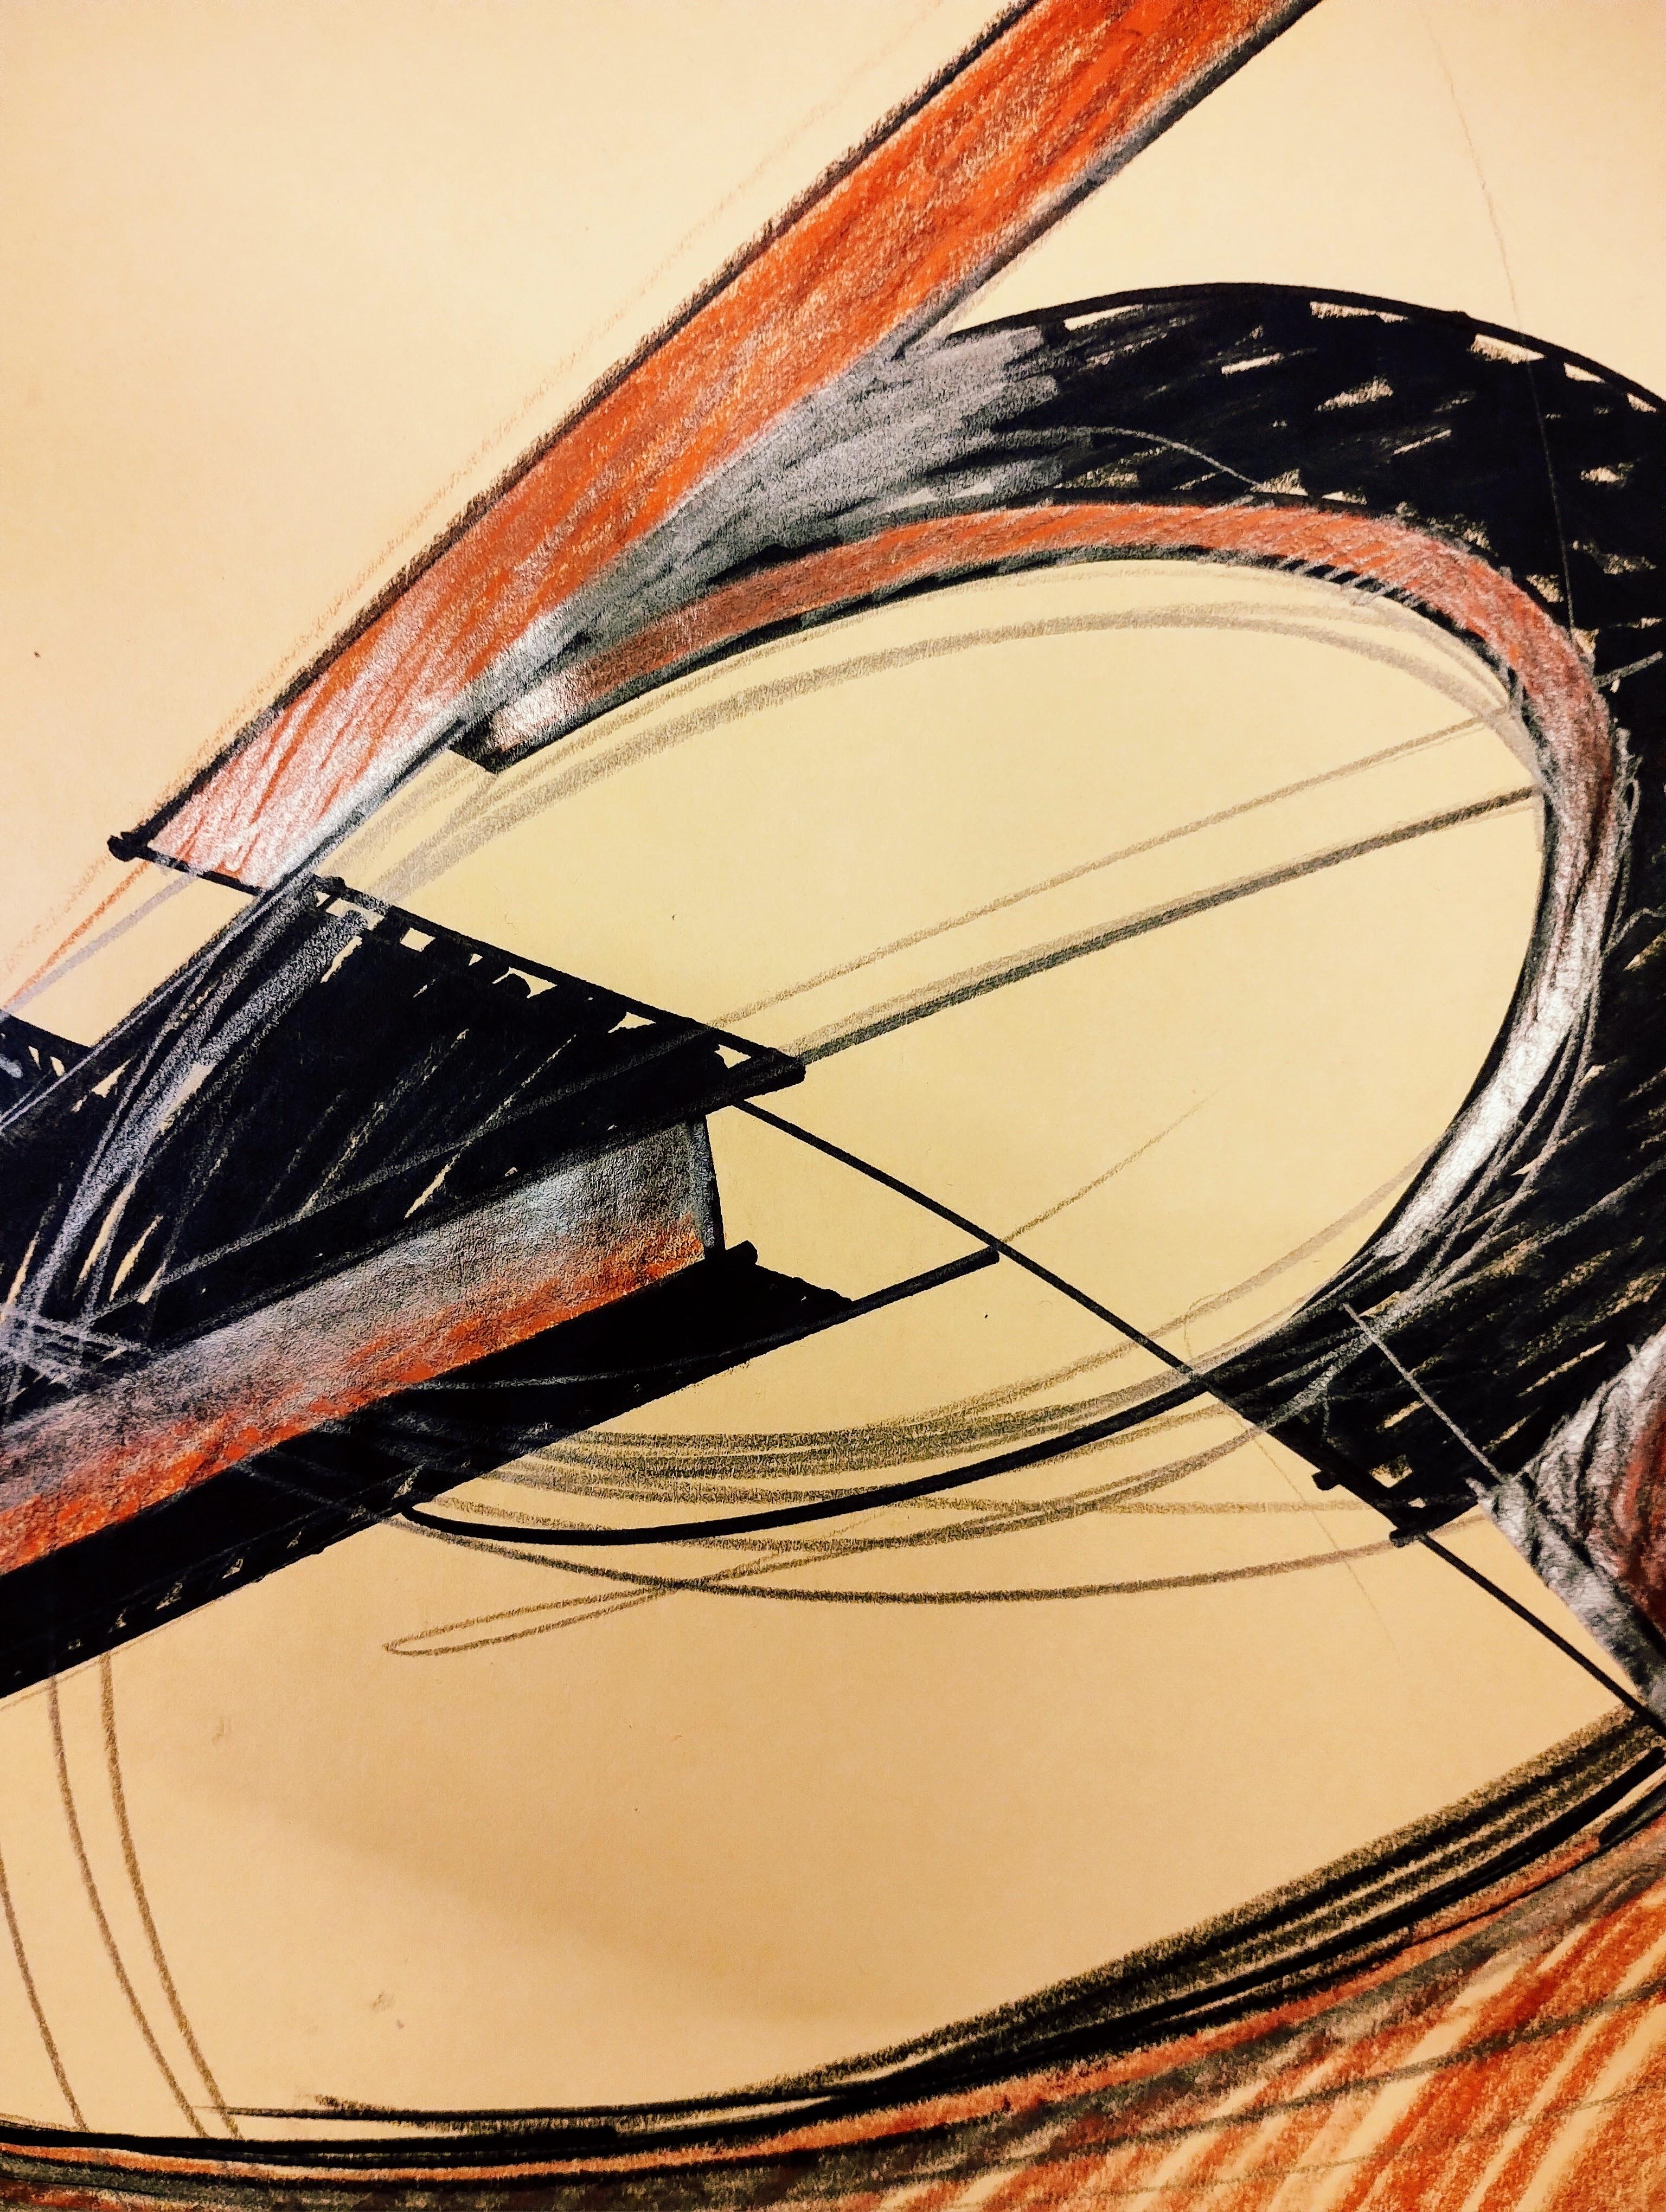 Magiche putrelle le tensioni danno equilibrio frammento di rotor - Art by Alex Corno